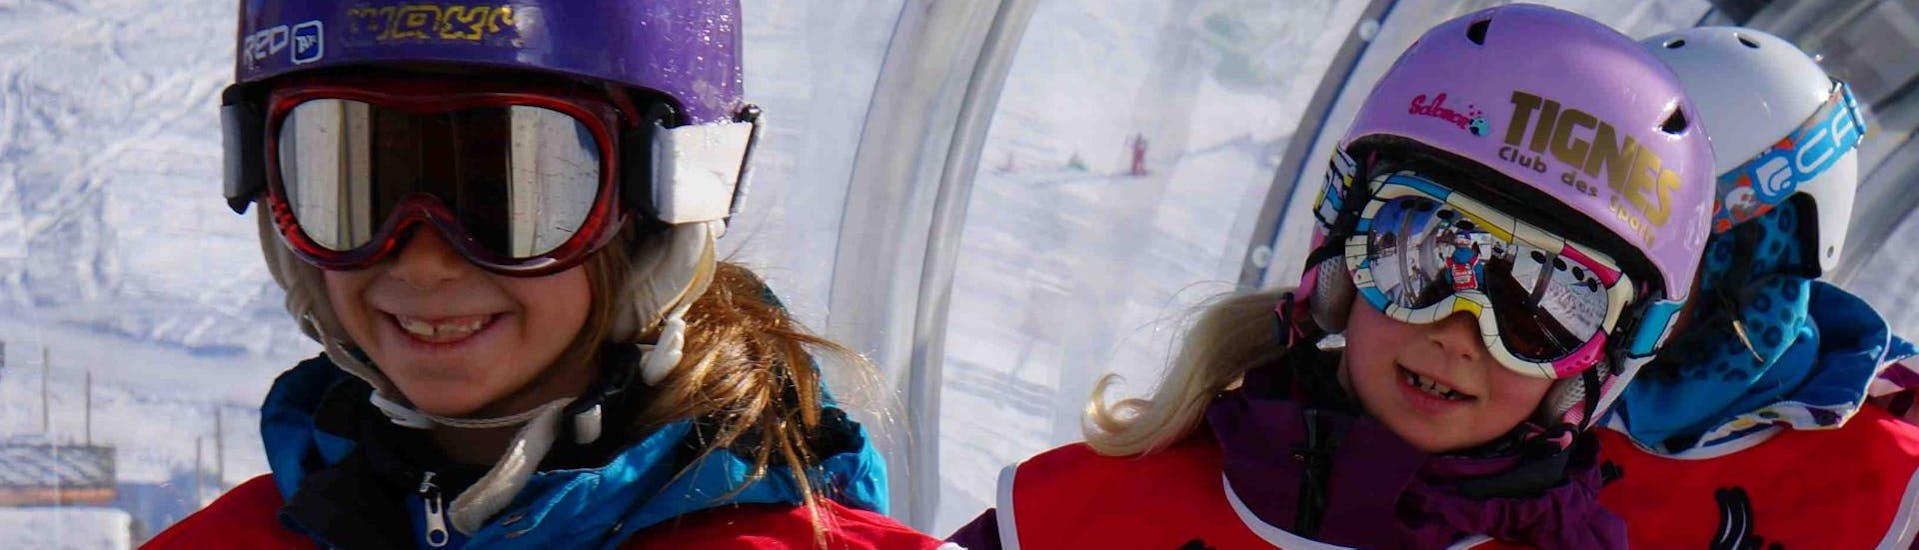 Deux jeunes enfants profitent de leur première session de Cours particulier de snowboard - Tous niveaux & âges avec l'école de ski Snocool dans la station de Val d'Isère.